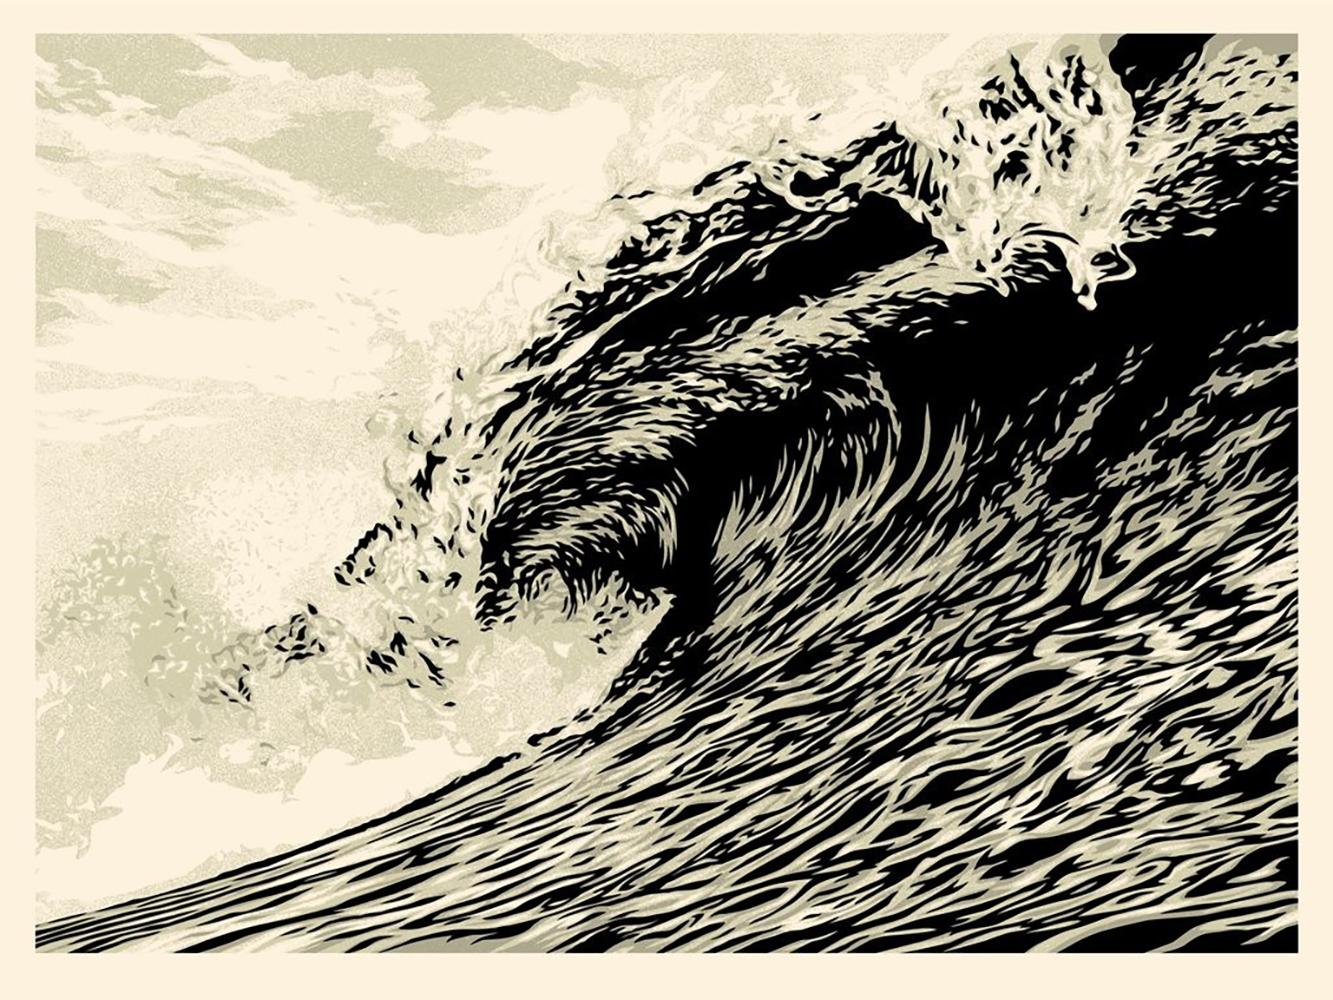 Shepard Fairey - Obey Giant - Wave of Distress : Sepia Ed.

"Am Montag ist Weltwassertag, und das ist ein passender Tag, um der Veröffentlichung dieser Wave of Distress-Drucke vorauszugehen. Der Weltwassertag lenkt die Aufmerksamkeit nicht nur auf